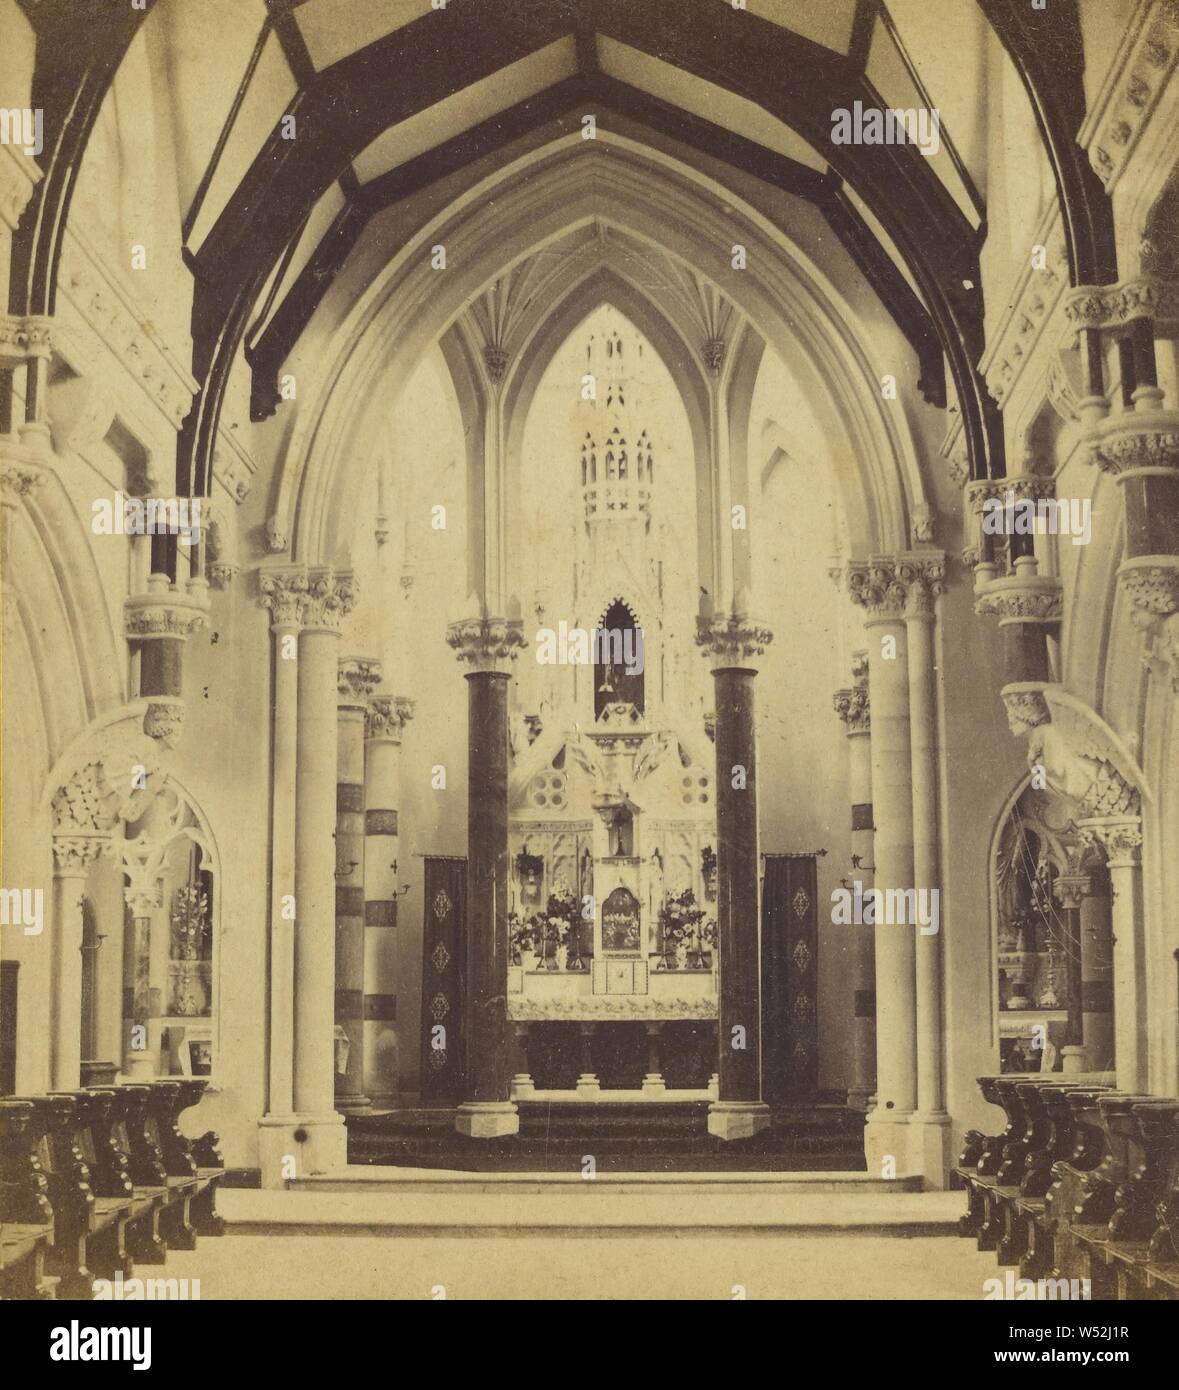 Innenraum der Klosterkirche, Abbotsleigh, Newton., Unbekannten, Britischen, ca. 1870, Eiweiß silber Drucken Stockfoto